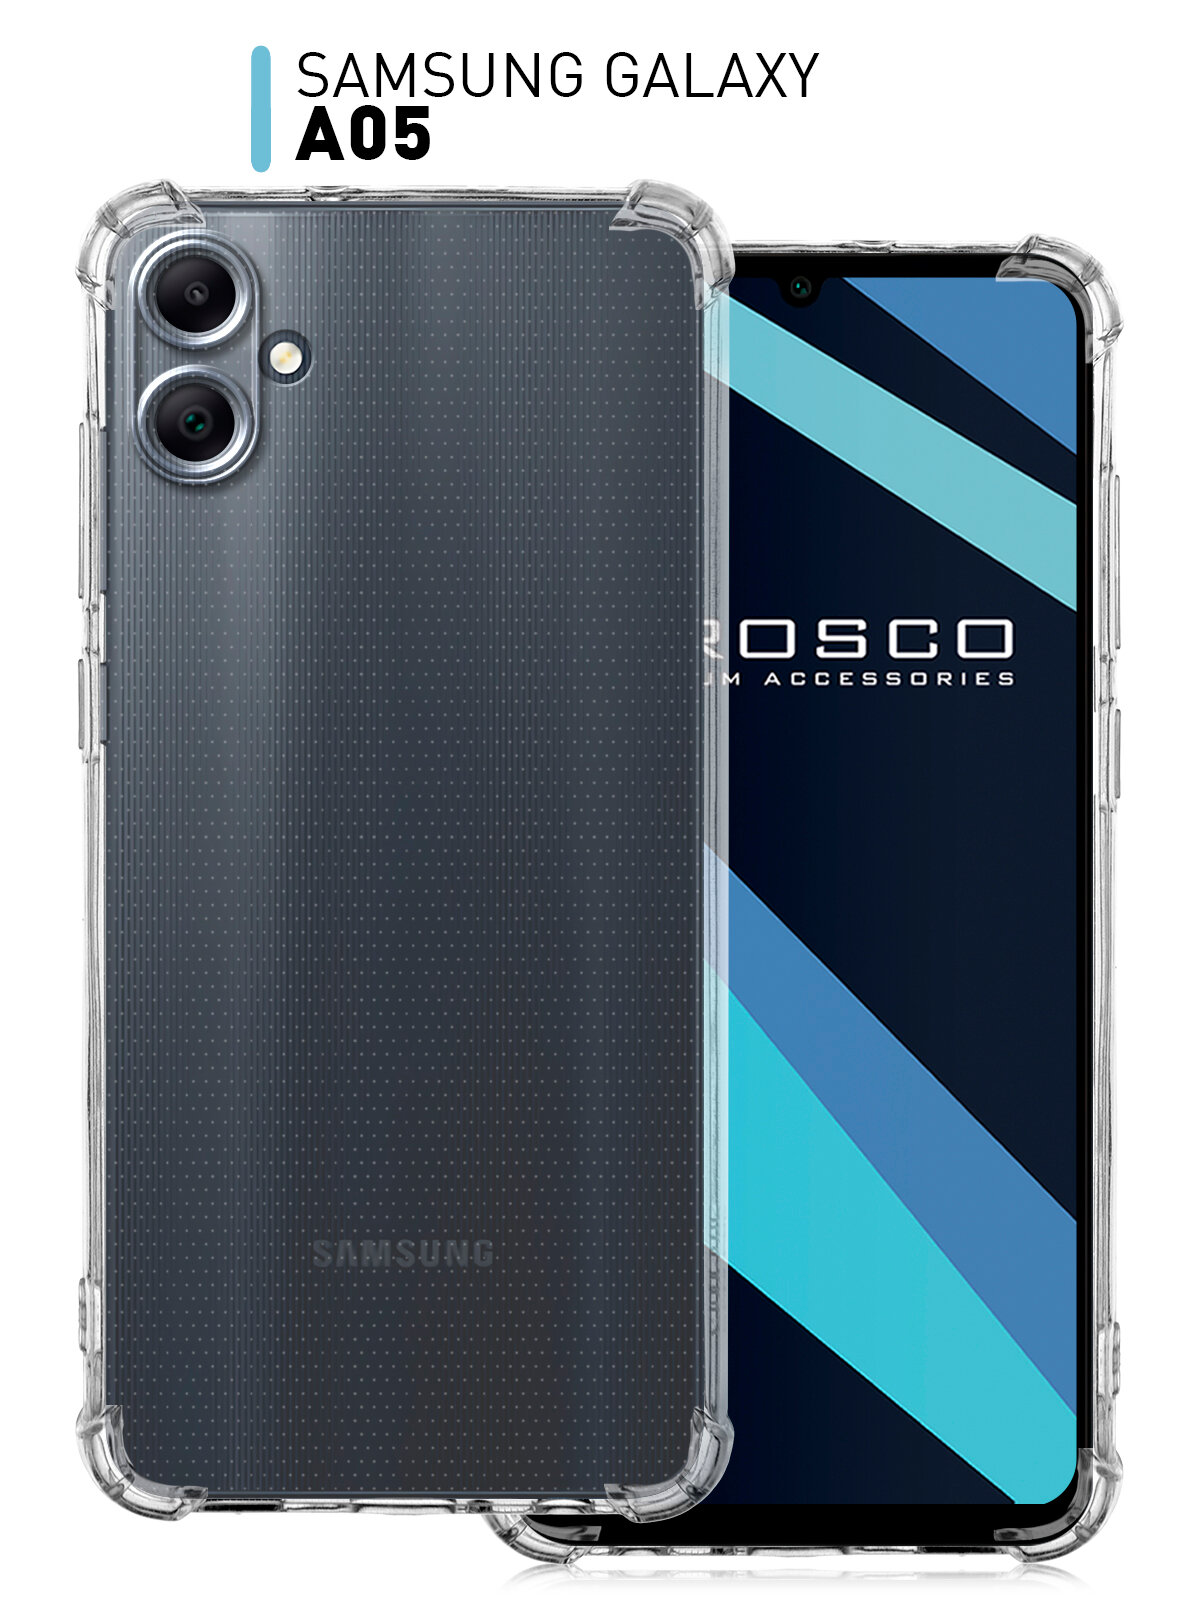 Противоударный чехол ROSCO на Samsung Galaxy A05 (Самсунг Галакси А05) усиленный, силиконовый чехол, защита модуля камер, прозрачный чехол